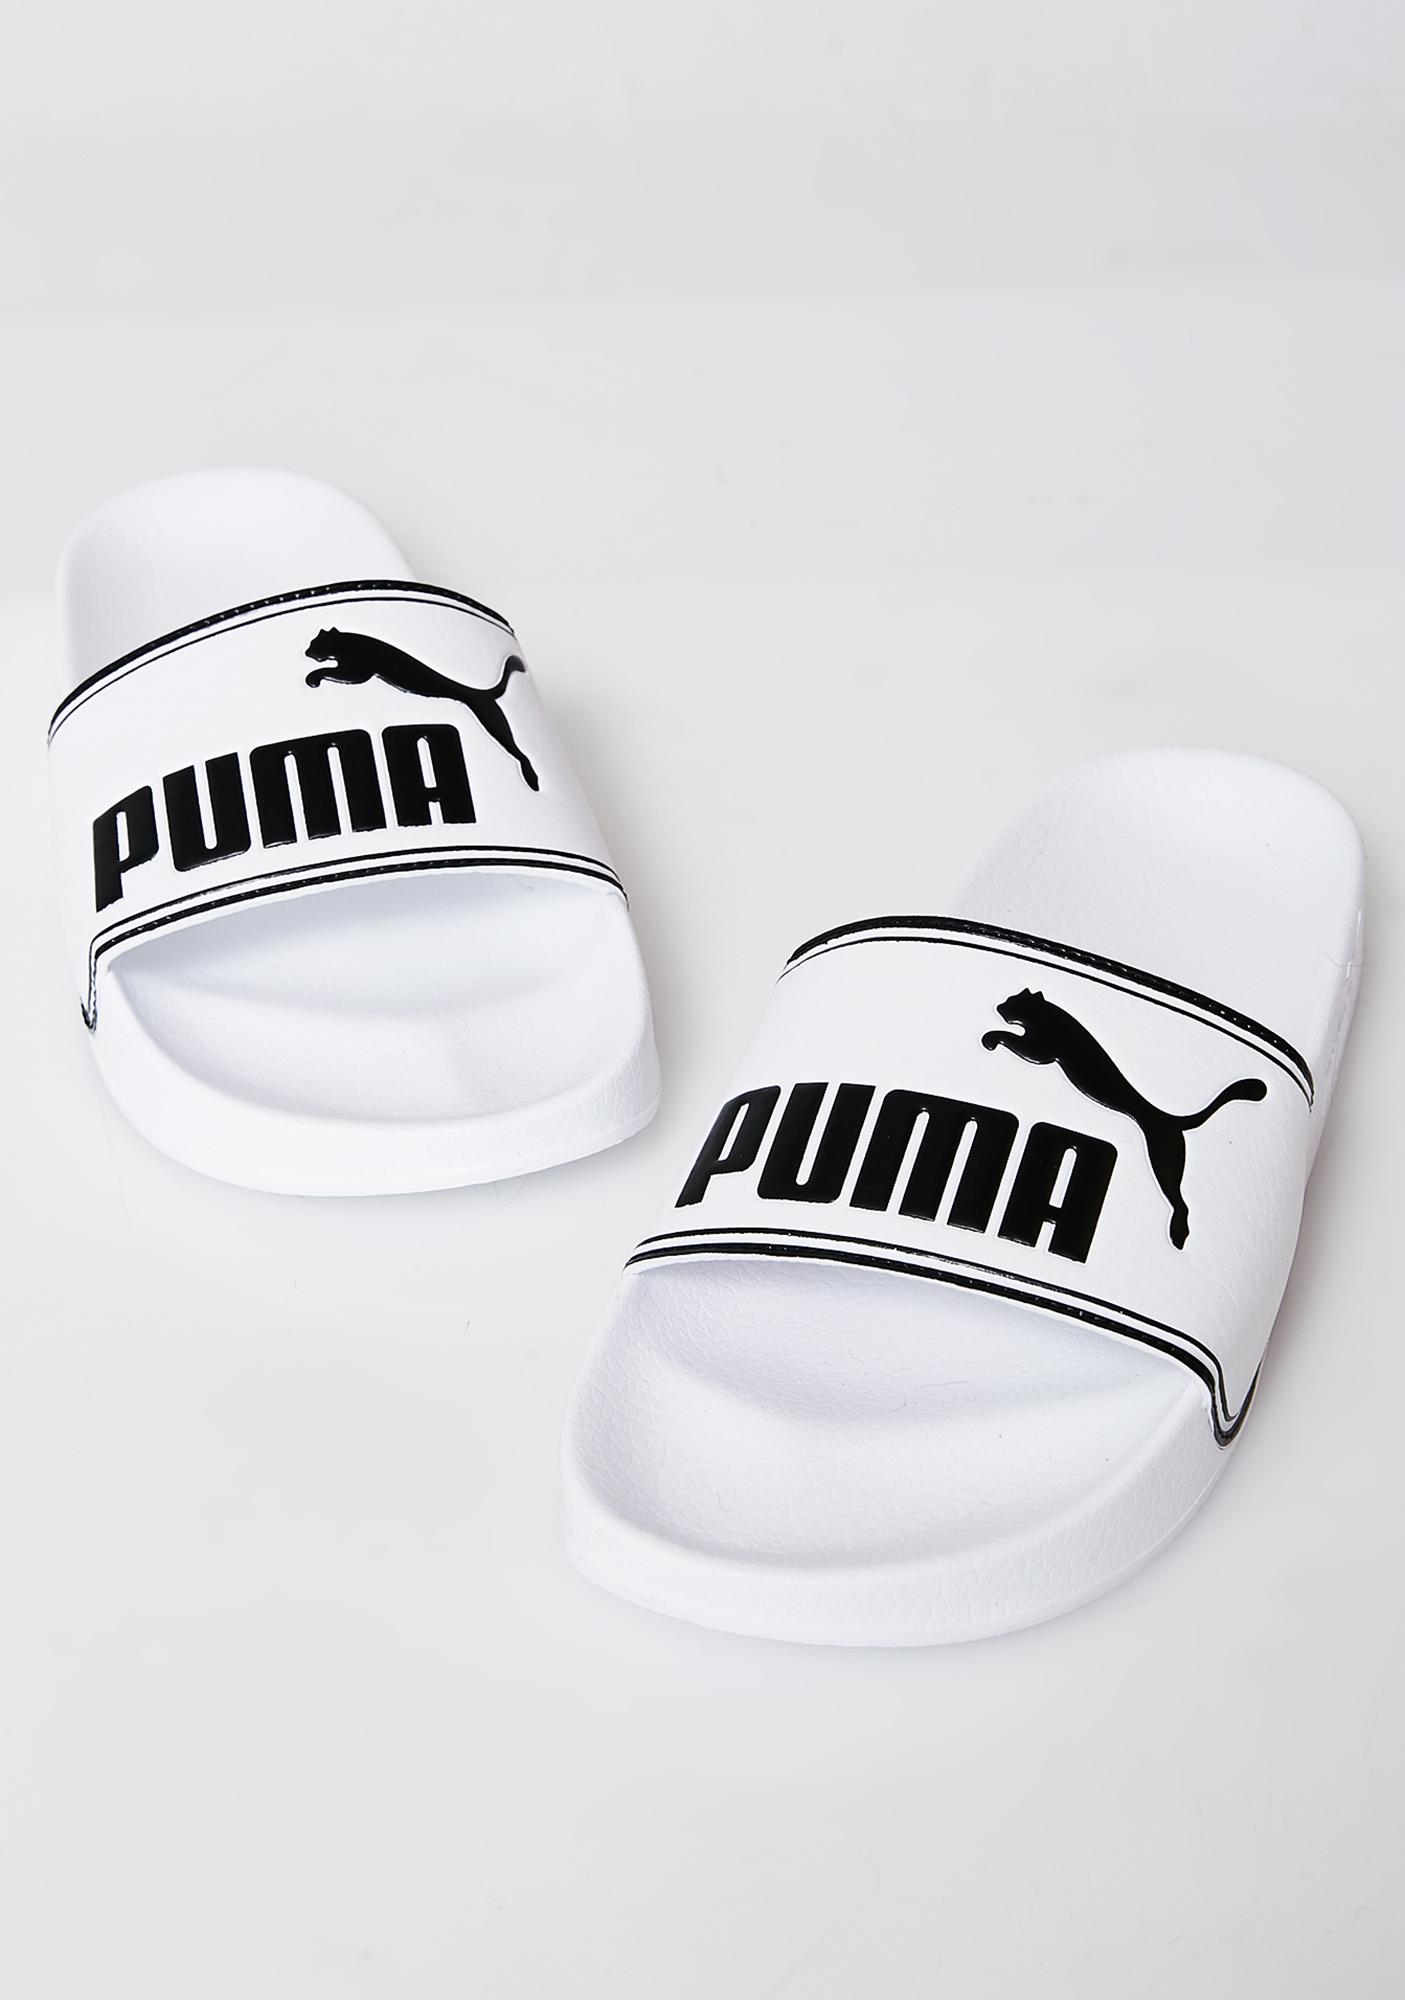 puma sliders white